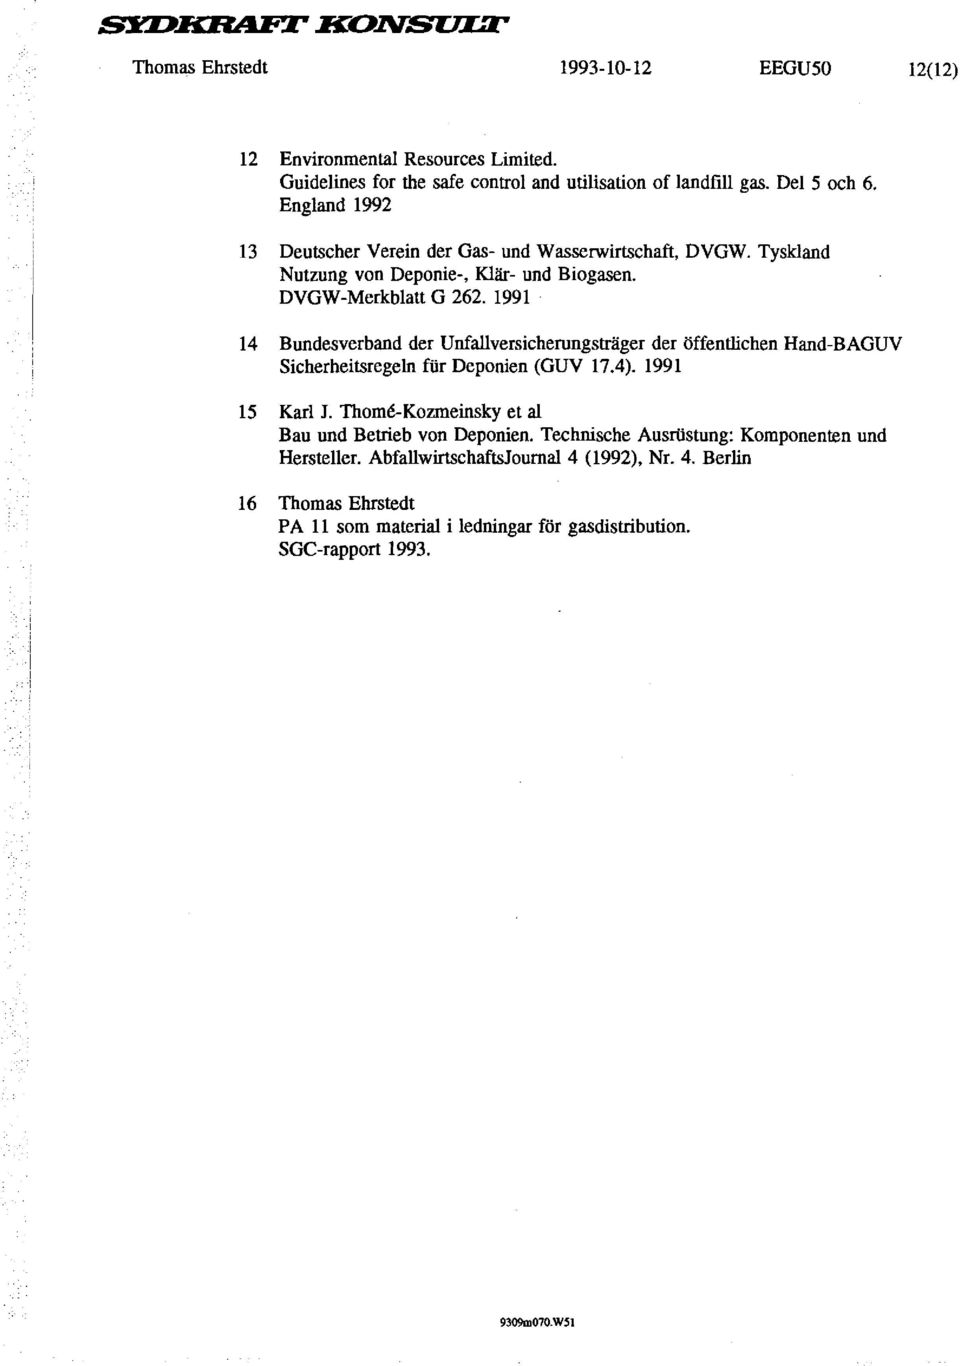 1991 14 Rundesverband der Unfallversicherungsträger der öffentlichen Hand-BAGUV Sicherheitsregeln fiir Deponien (GUV 17.4). 1991 15 Karl J.